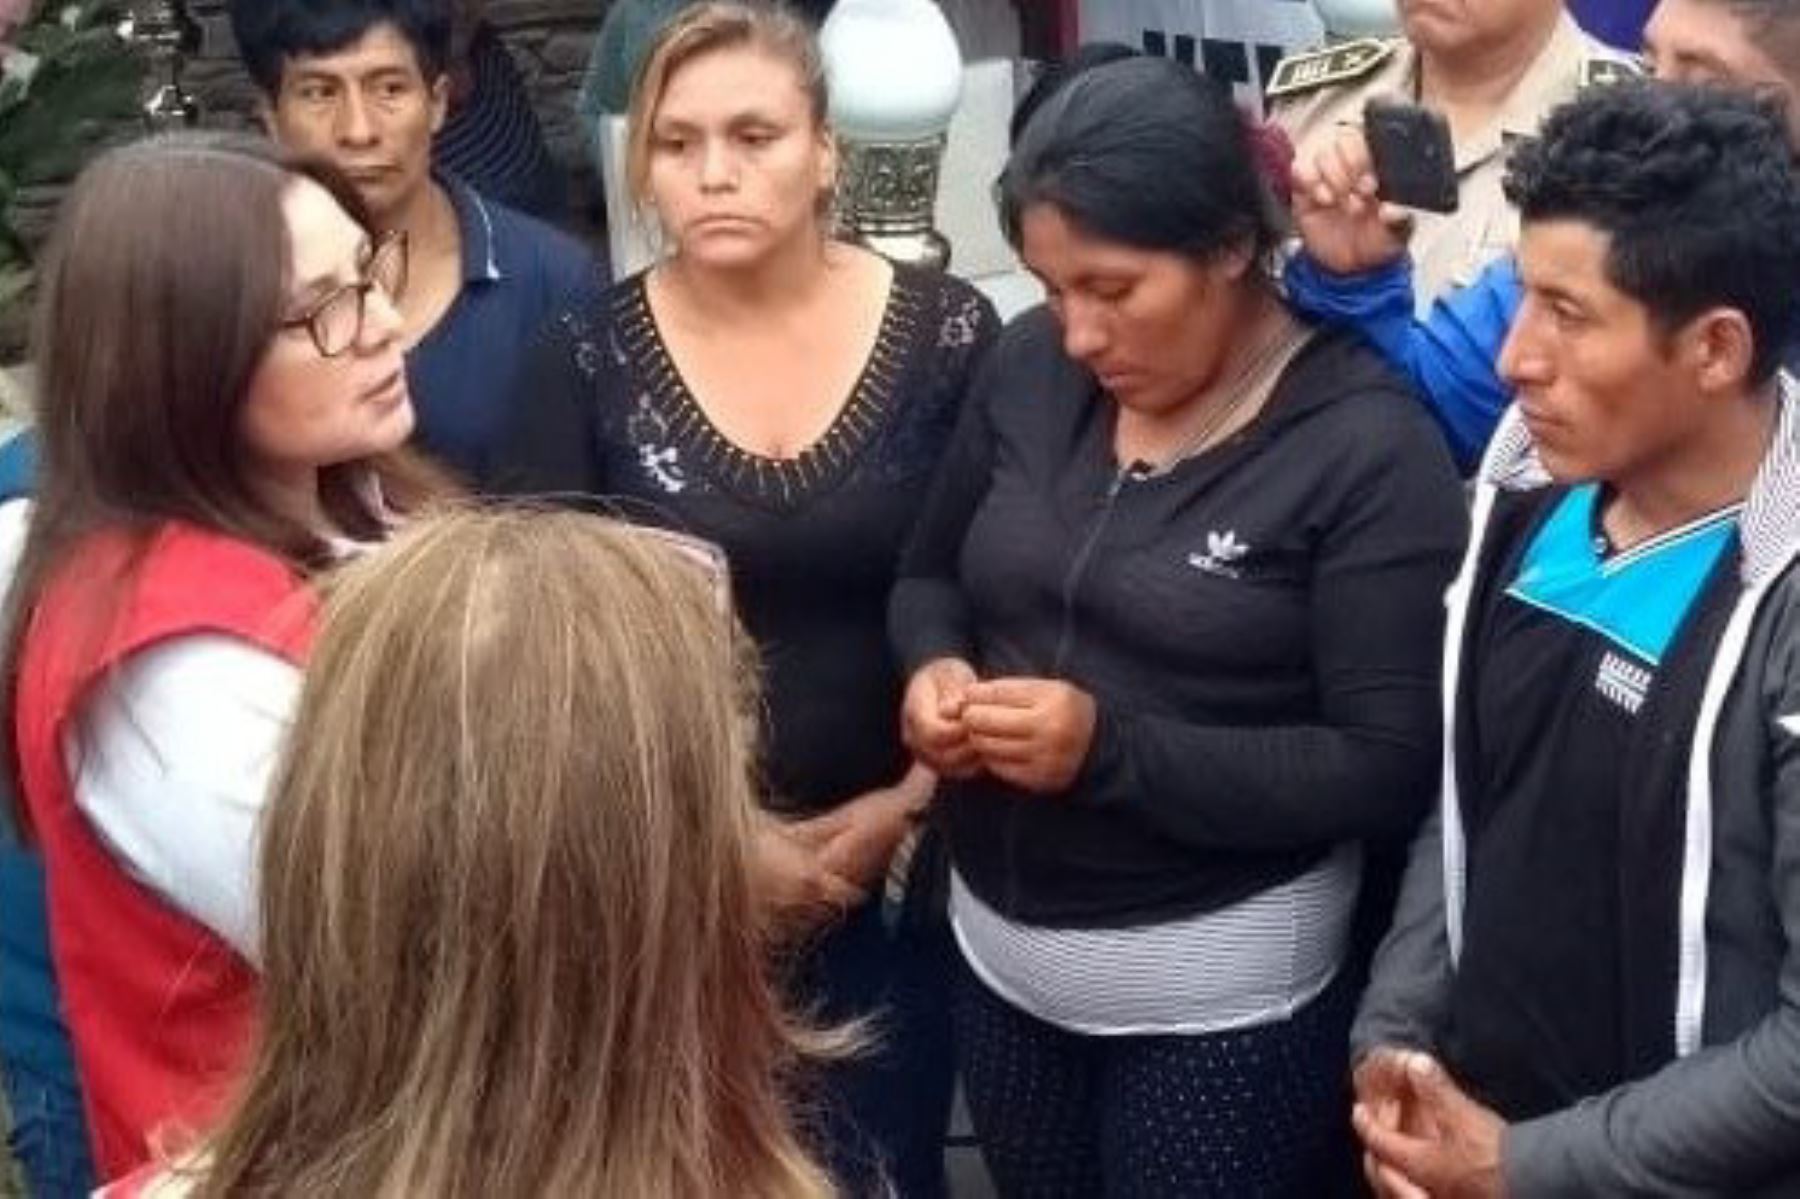 La ministra de la Mujer y Poblaciones Vulnerables, Ana María Mendieta, se reunió en la víspera con familiares de la niña de 10 años asesinada en Barranca.